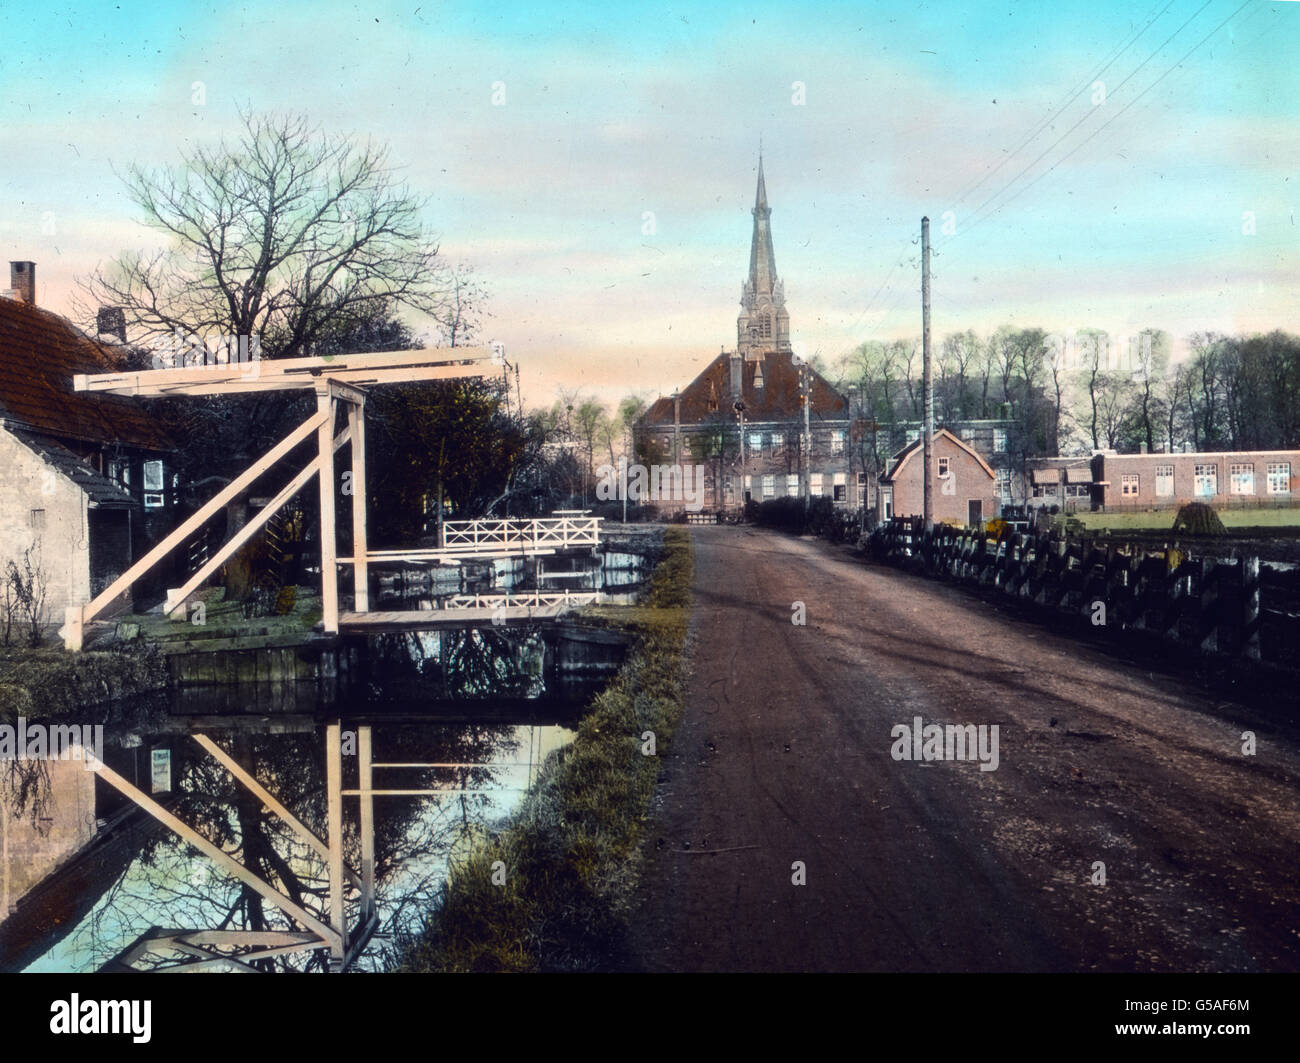 Die holländischen Landstraßen sind meist von guter Beschaffenheit, was den regen Rad- und Autoverkehr begünstigt. Häufig fließt an einer Straßenseite eine Gracht und wieder sehen wir eine für Holland typische Zugbrücke. Da der Wasserstand sehr veränderlich ist, müssen die Brücken zum Aufziehen eingerichtet sein, weil bei  dem häufigen Hochwasser selbst kleine Kähne nicht unter der Brücke hindurch könnten. Alle Ortschaften machen einen wohlhabenden und peinlich sauberen Eindruck. Netherlands, 1910s, 1920s, 20th century, archive, Carl Simon, travel, history, historical, town, city, town canal, c Stock Photo